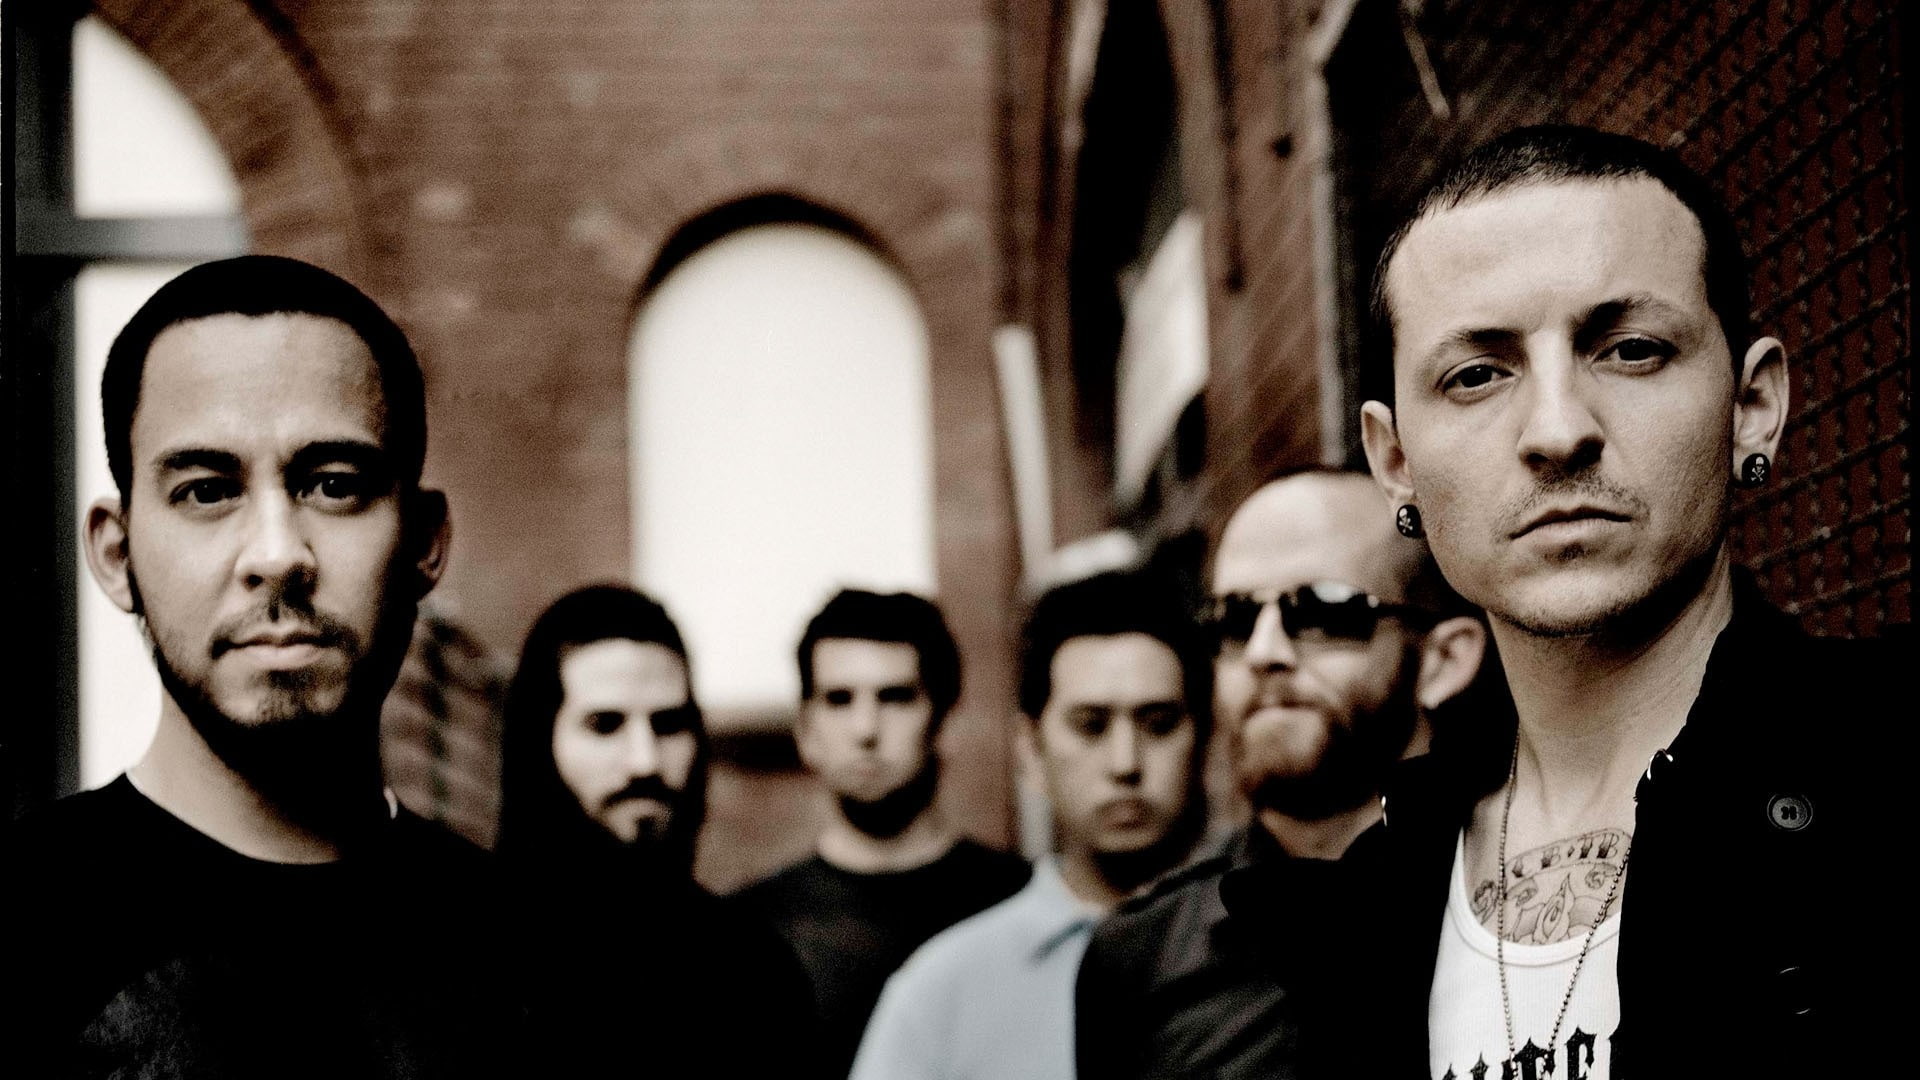 Linkin Park Blur Effect, assorted men's clothes, music artists